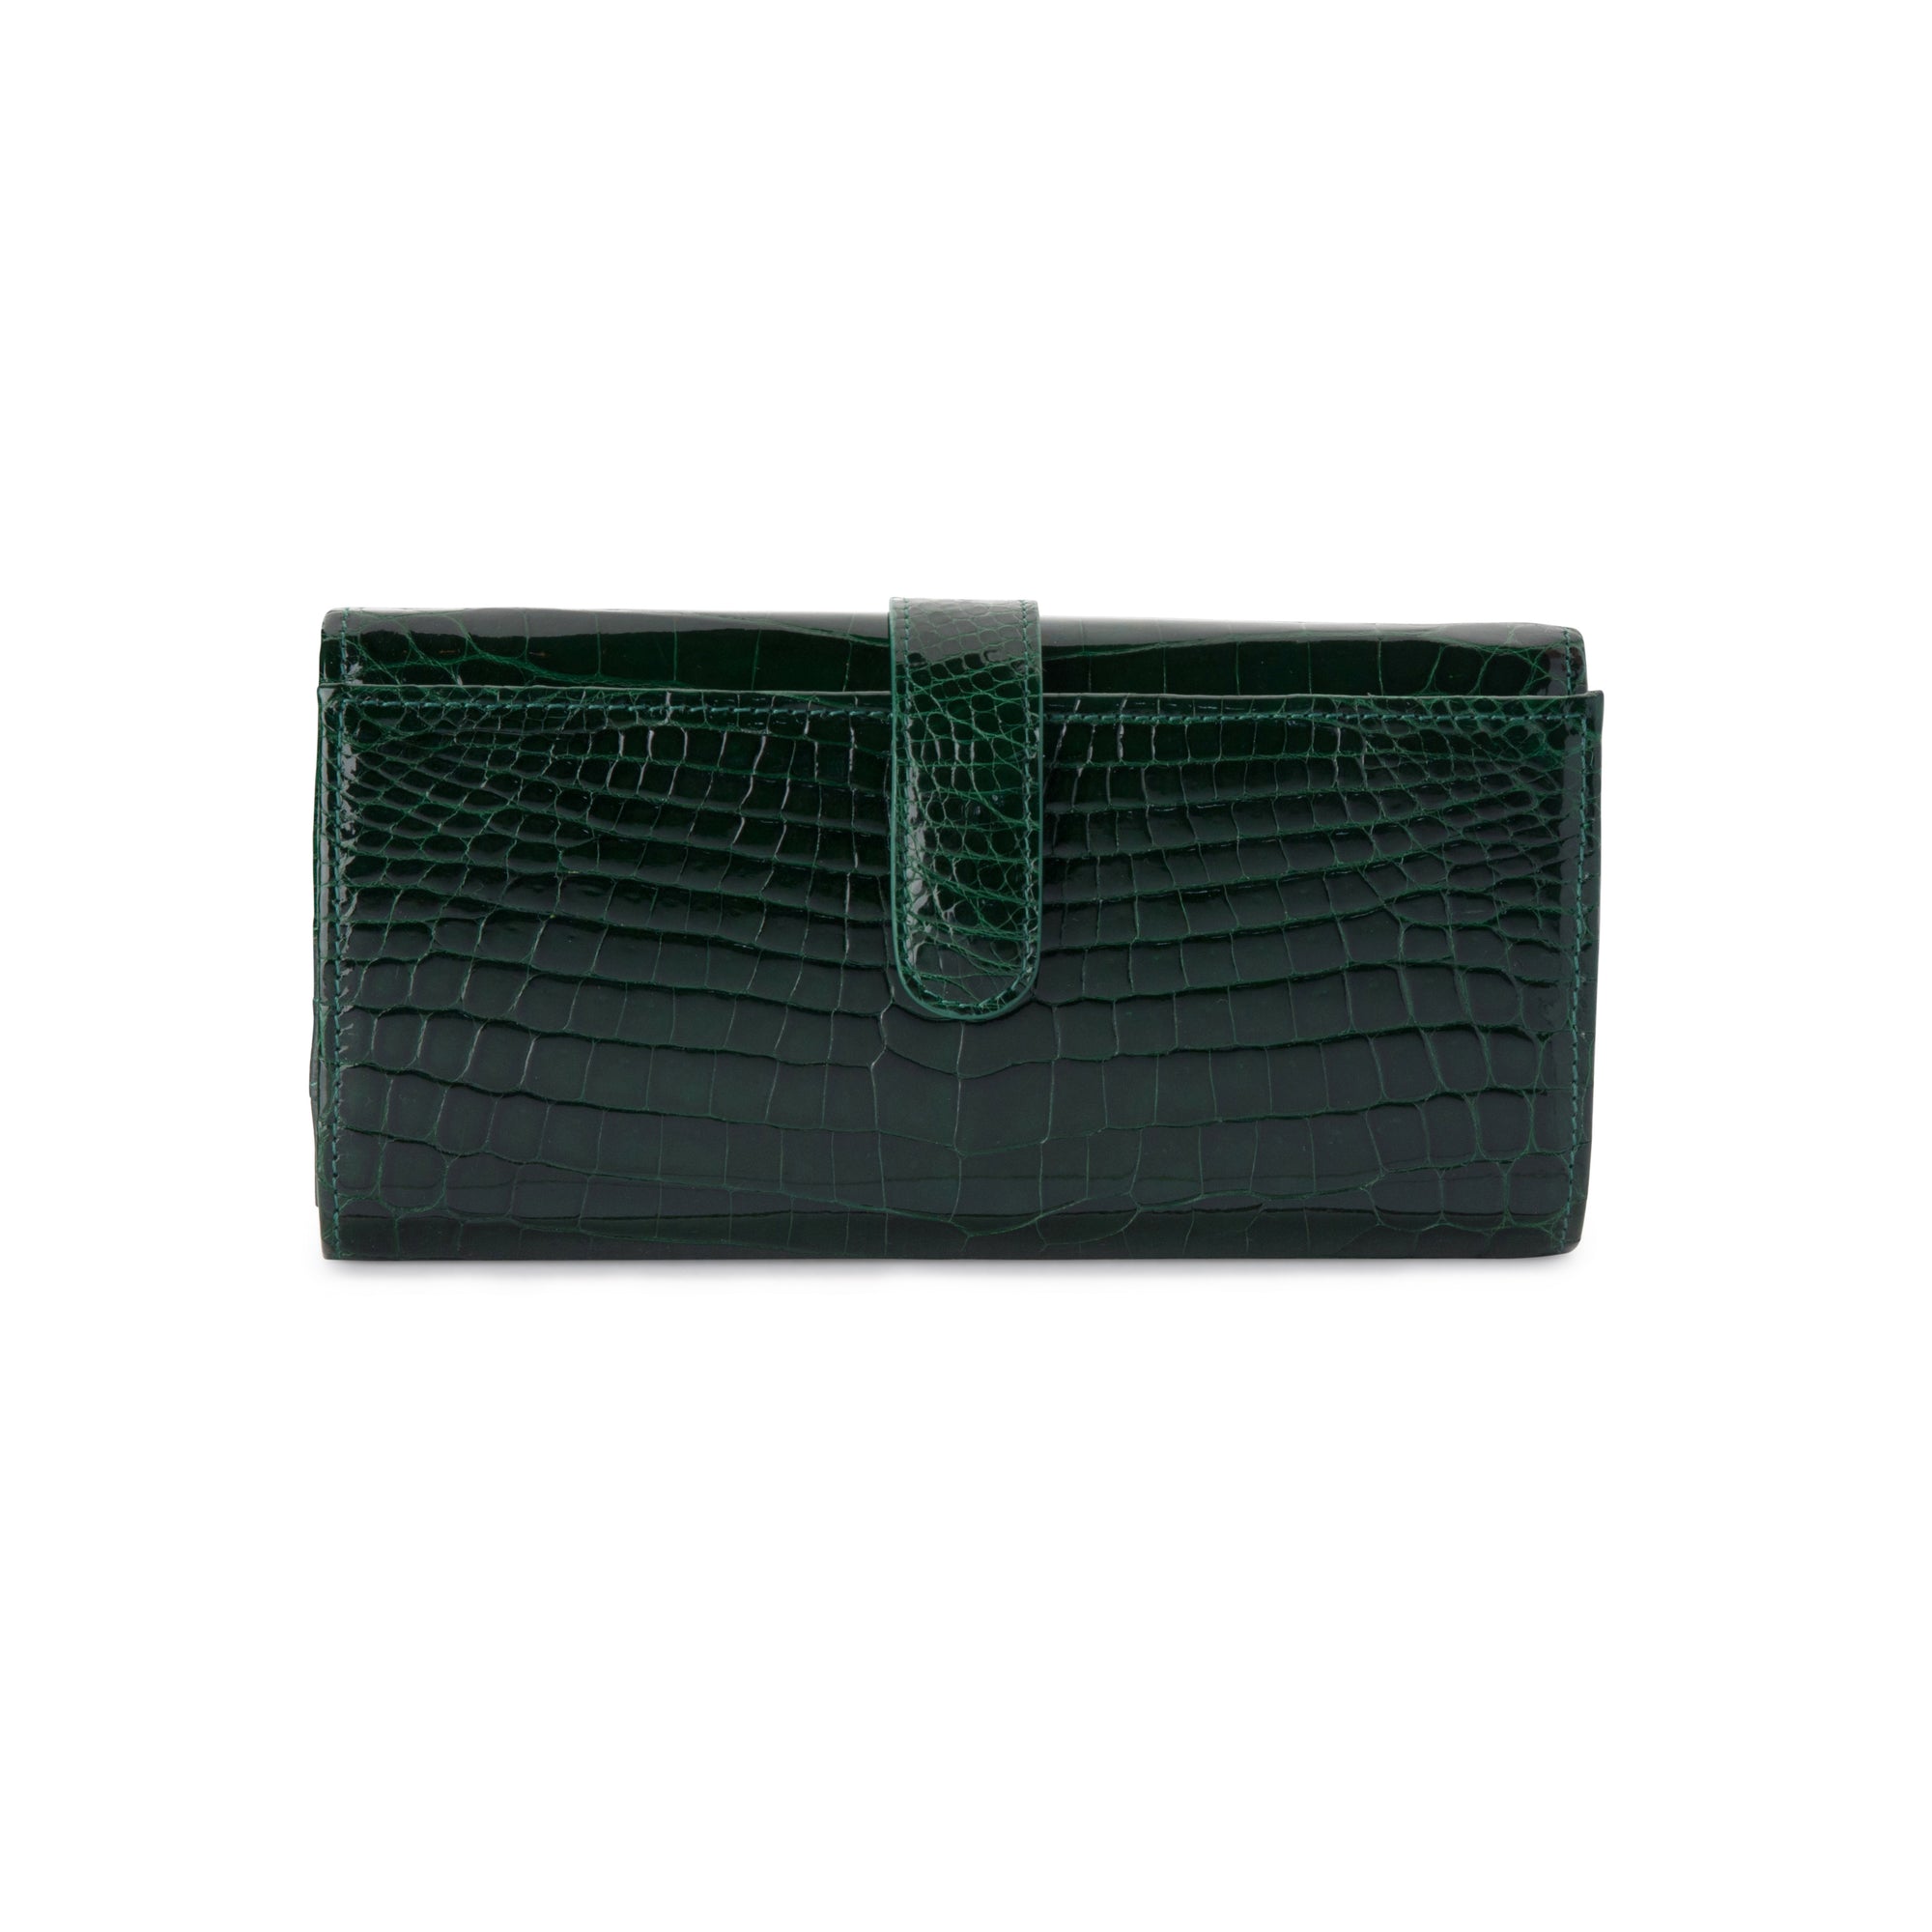 LIN8 Australia's luxury crocodile leather women's long wallet purse